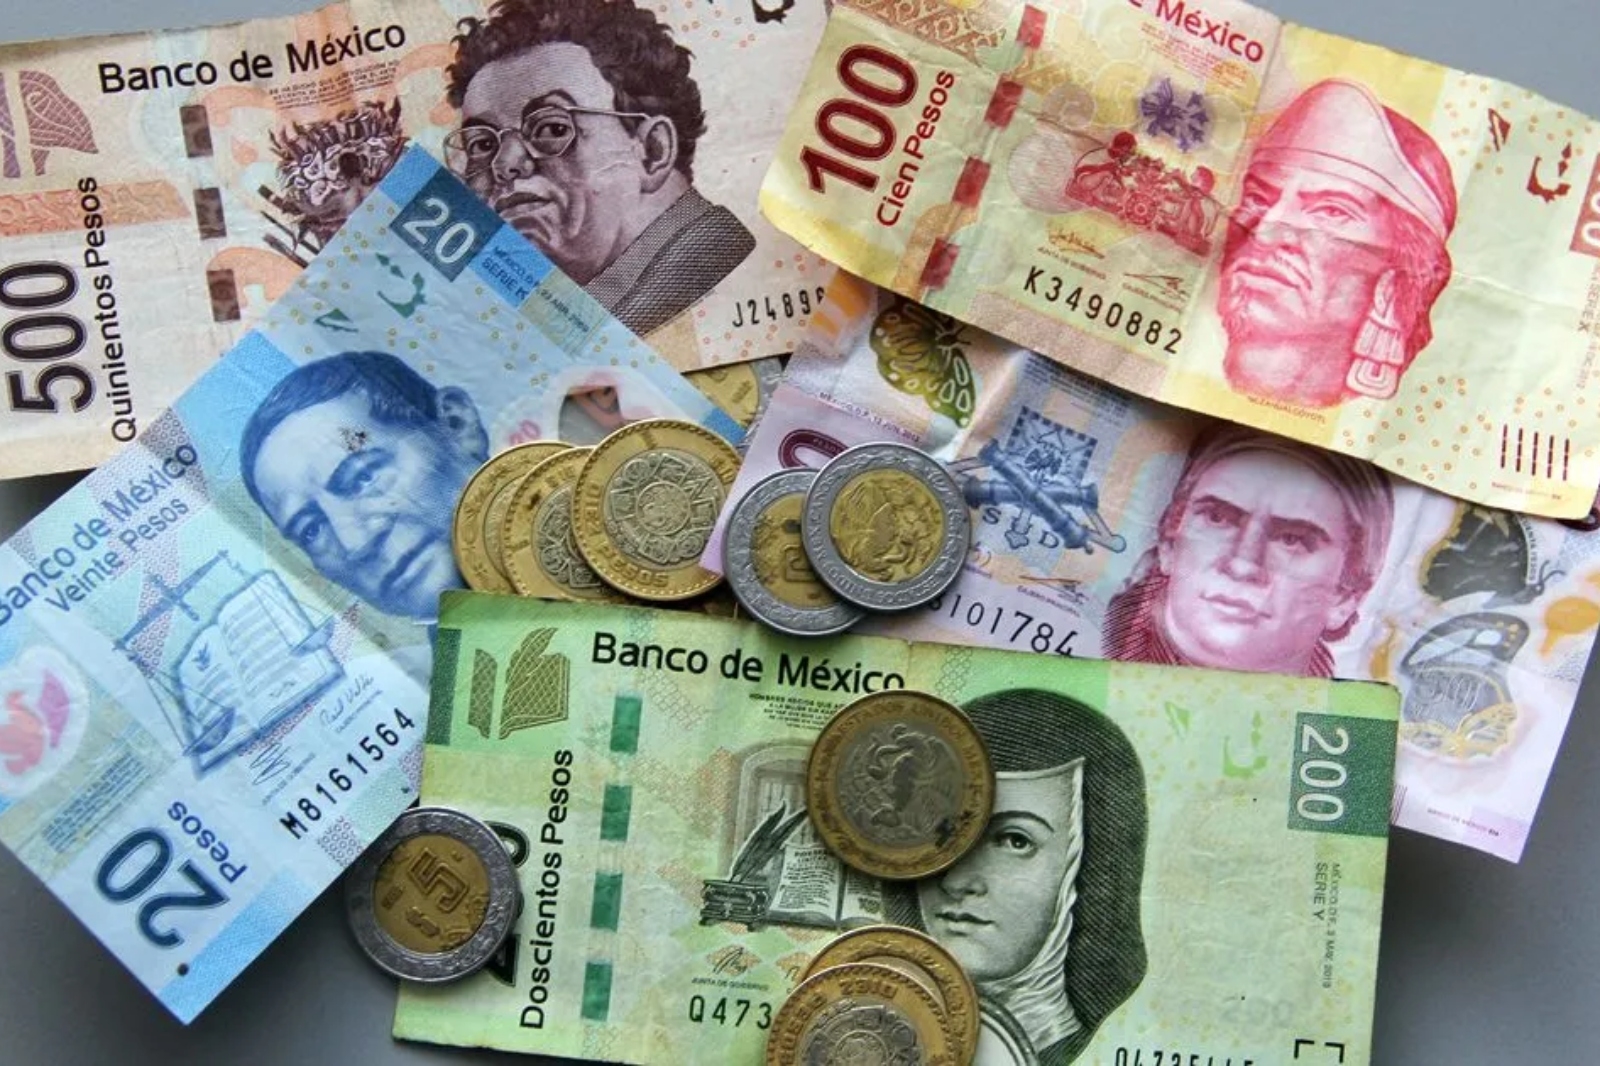 Quintana Roo superó a Campeche y Yucatán en el ranking de ciudades con mayor recuperación del salario mínimo